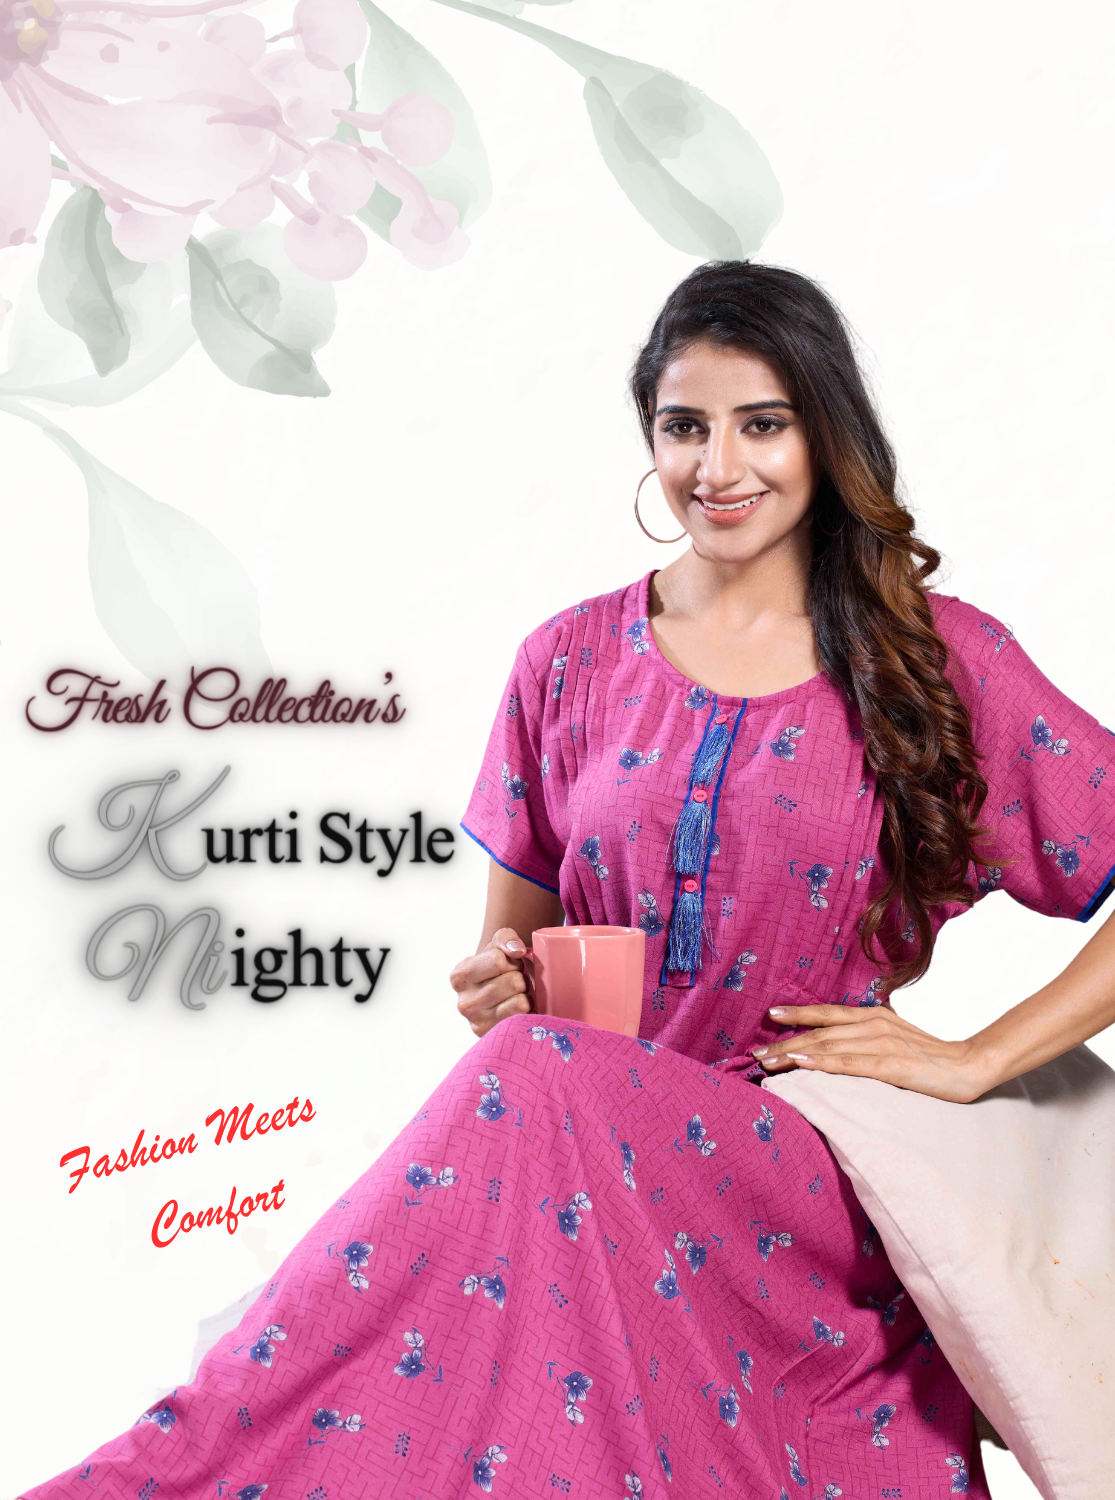 MANGAI New Soft Alpine KURTI Style | Beautiful Stylish KURTI Model | Half Sleeve |Fresh Arrivals for Stylish Women's